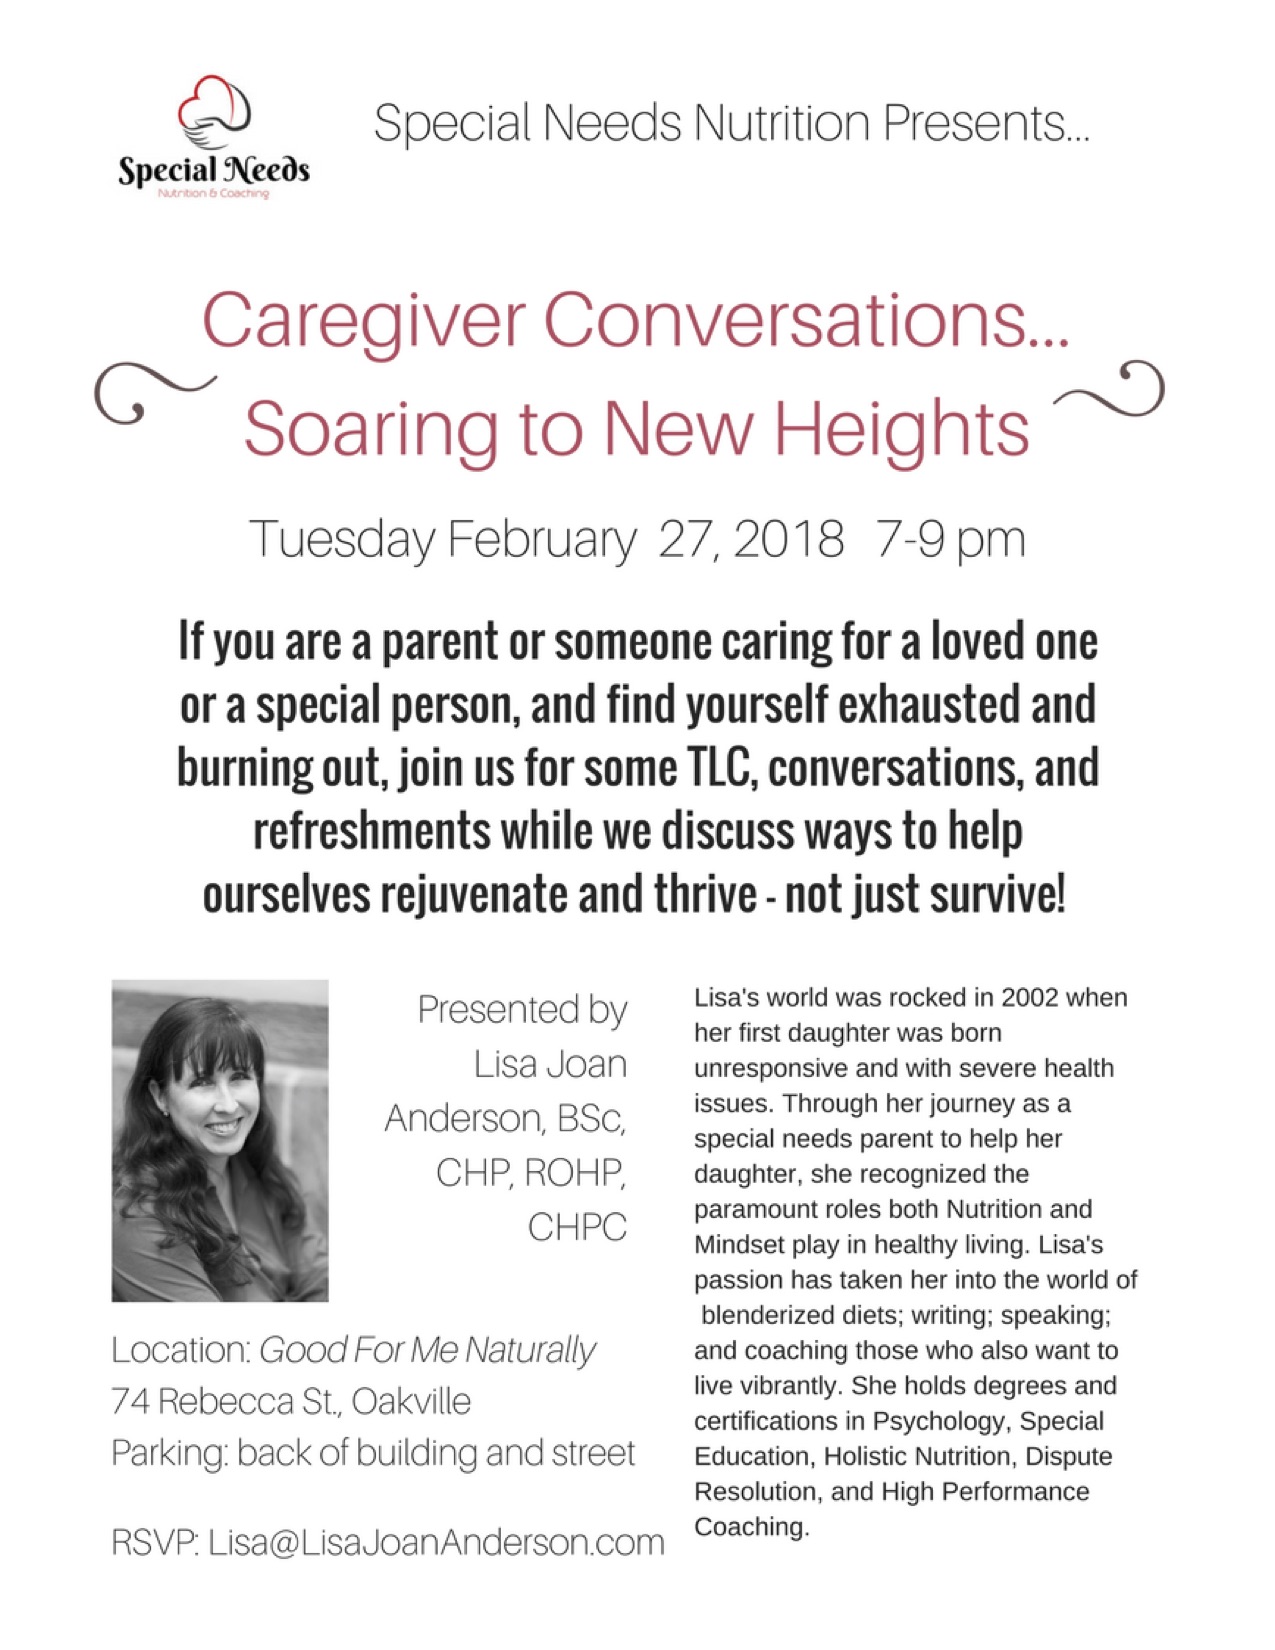 Caregiver Conversations Tue February 27, 2018